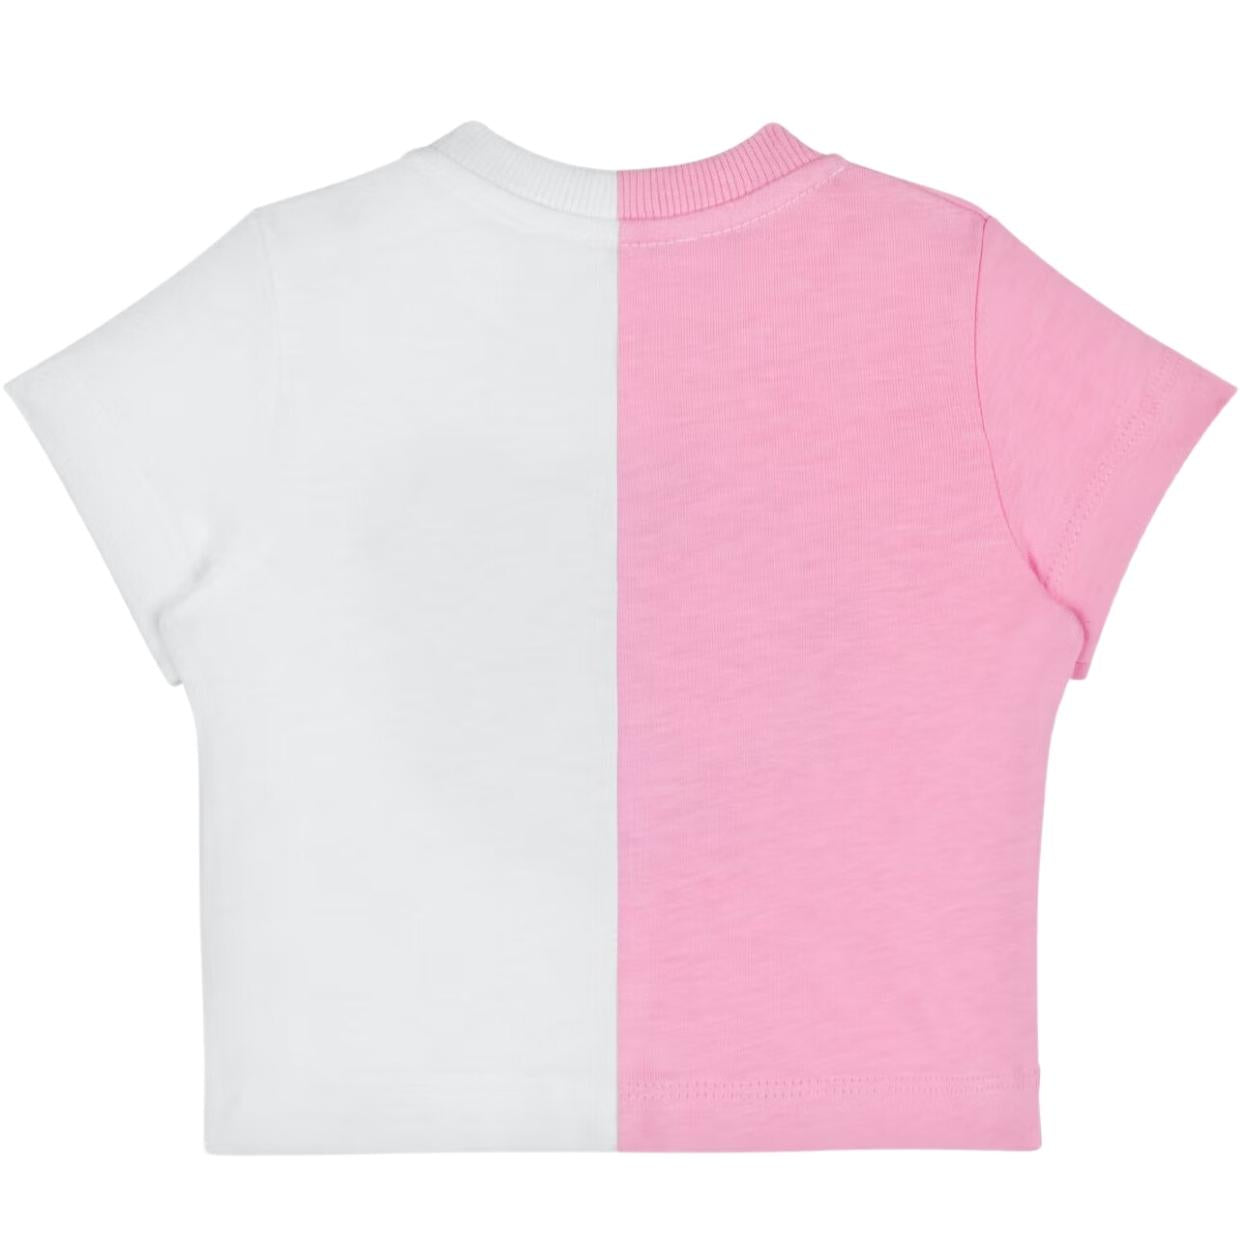 Moschino Baby Half Graphic Logo Pink/White T-Shirt